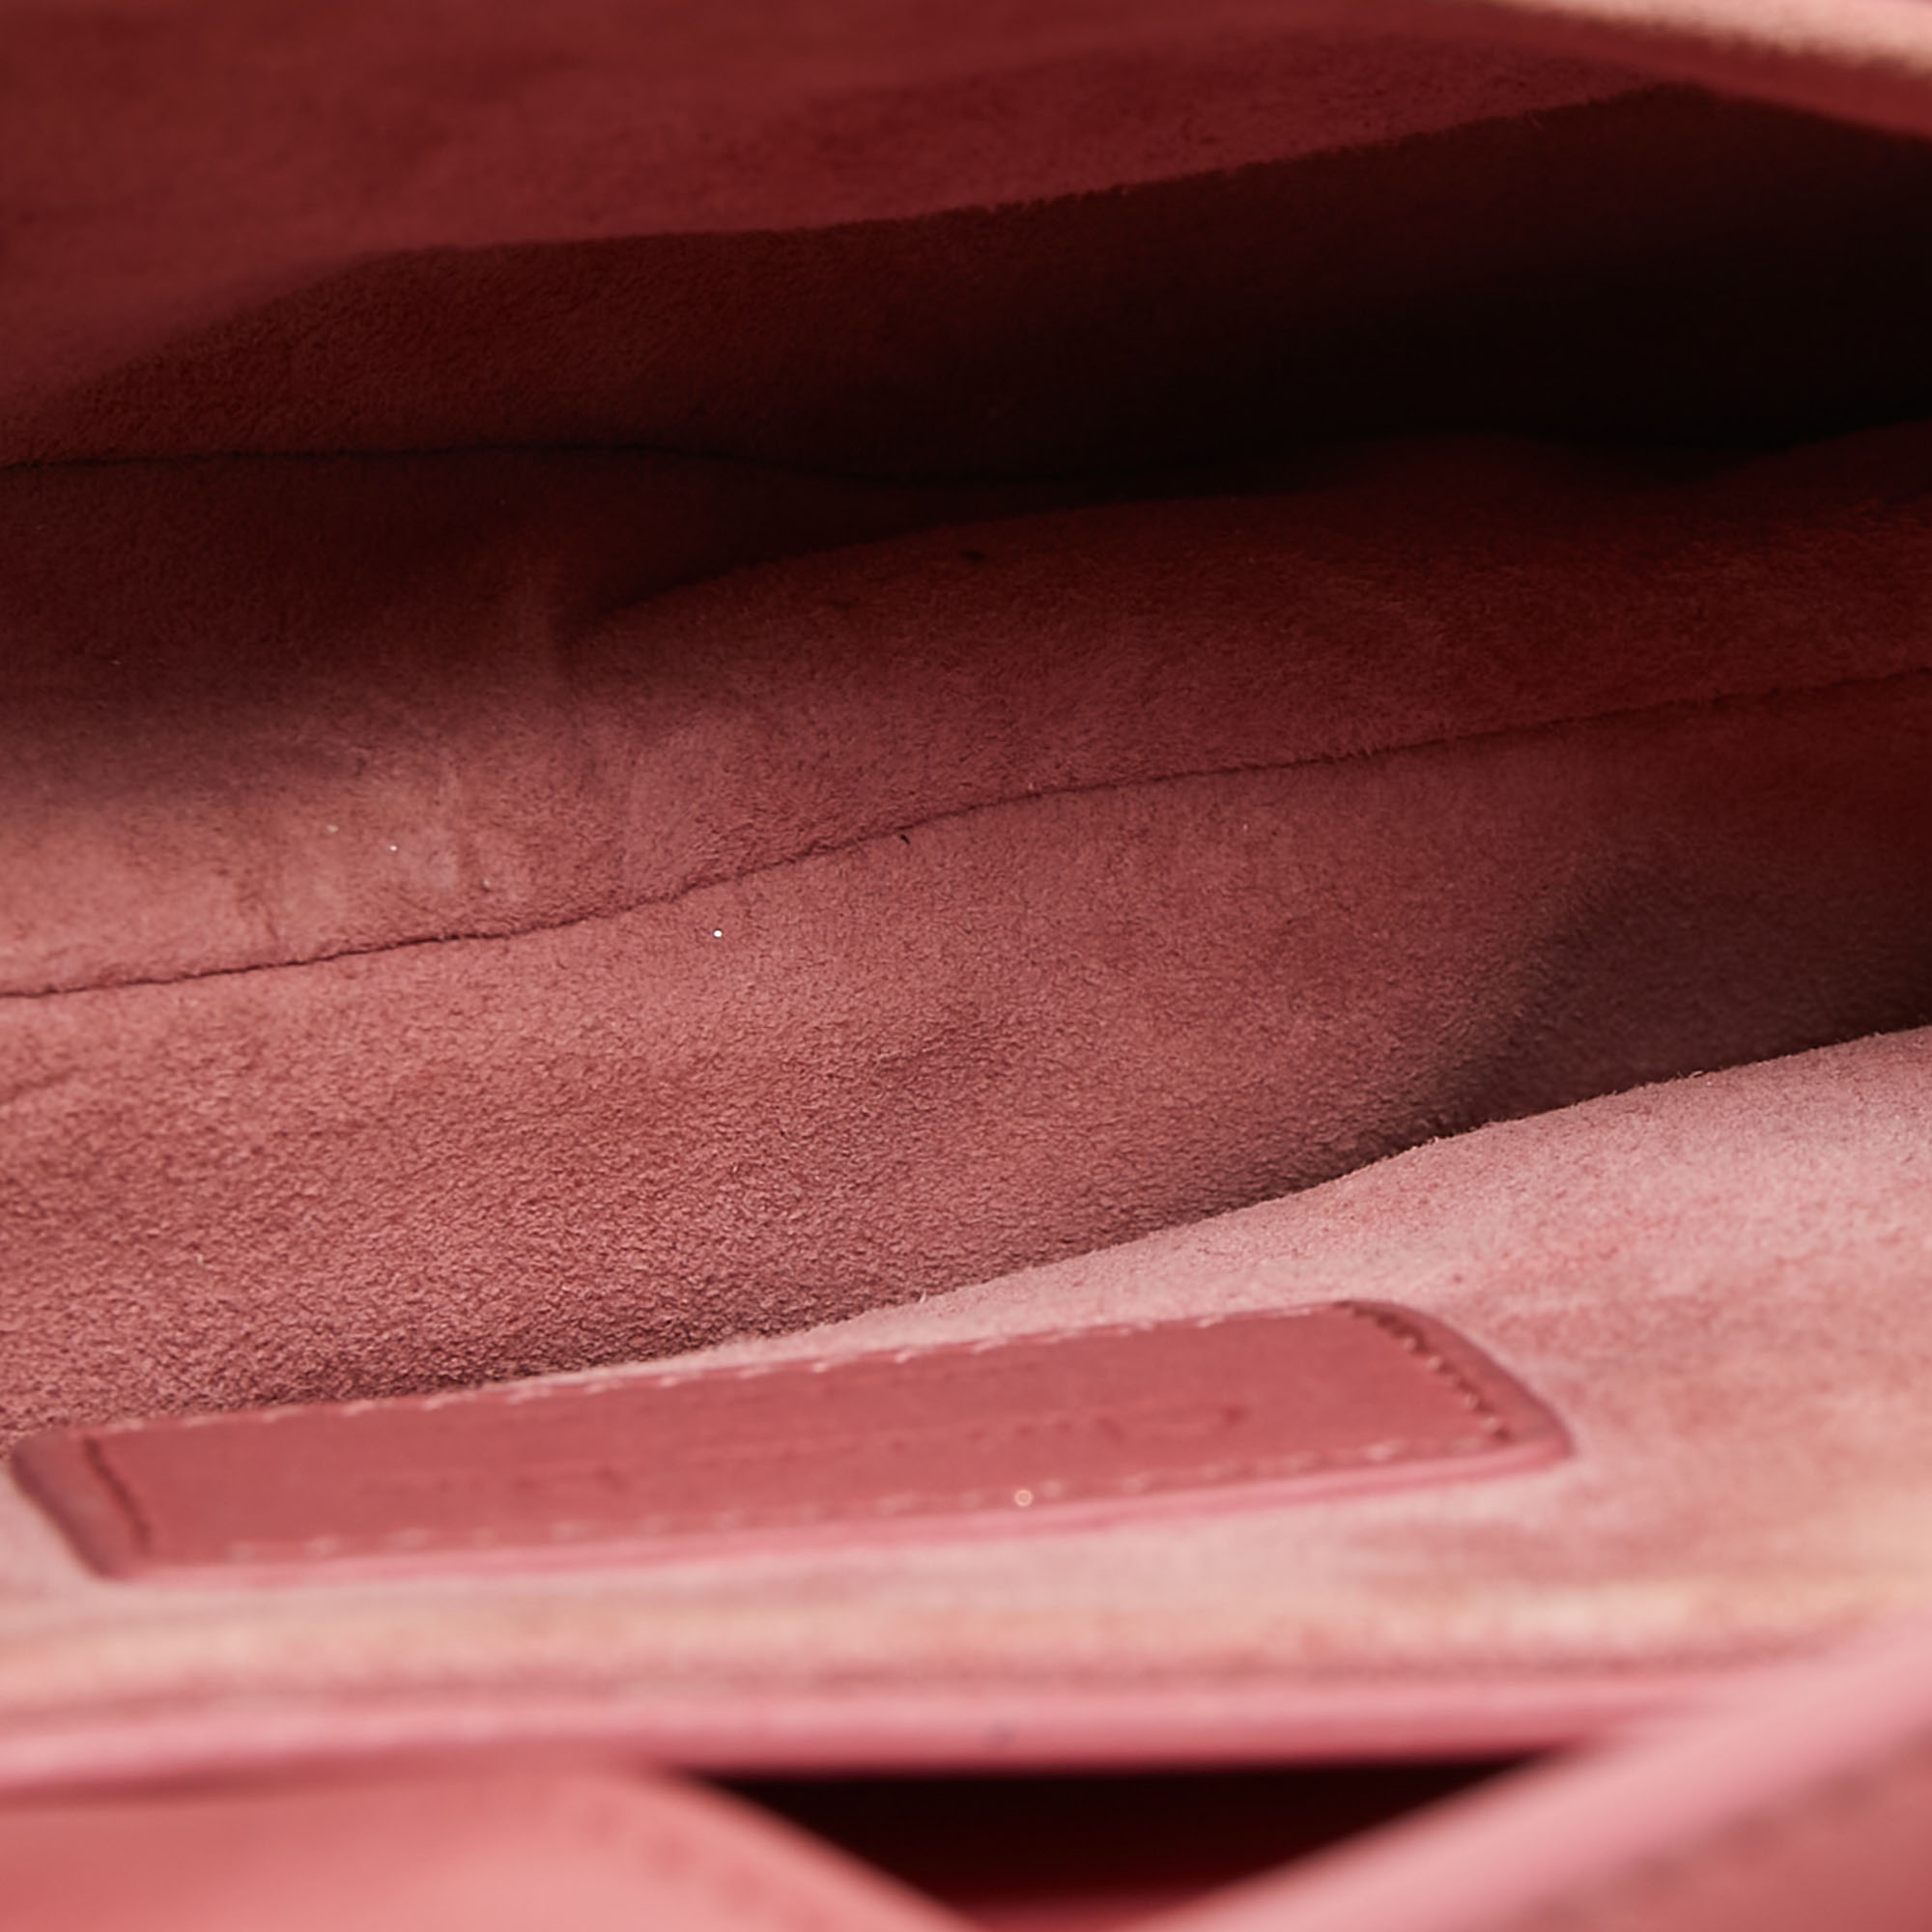 Dior Old Rose Mini Leather Saddle Bag